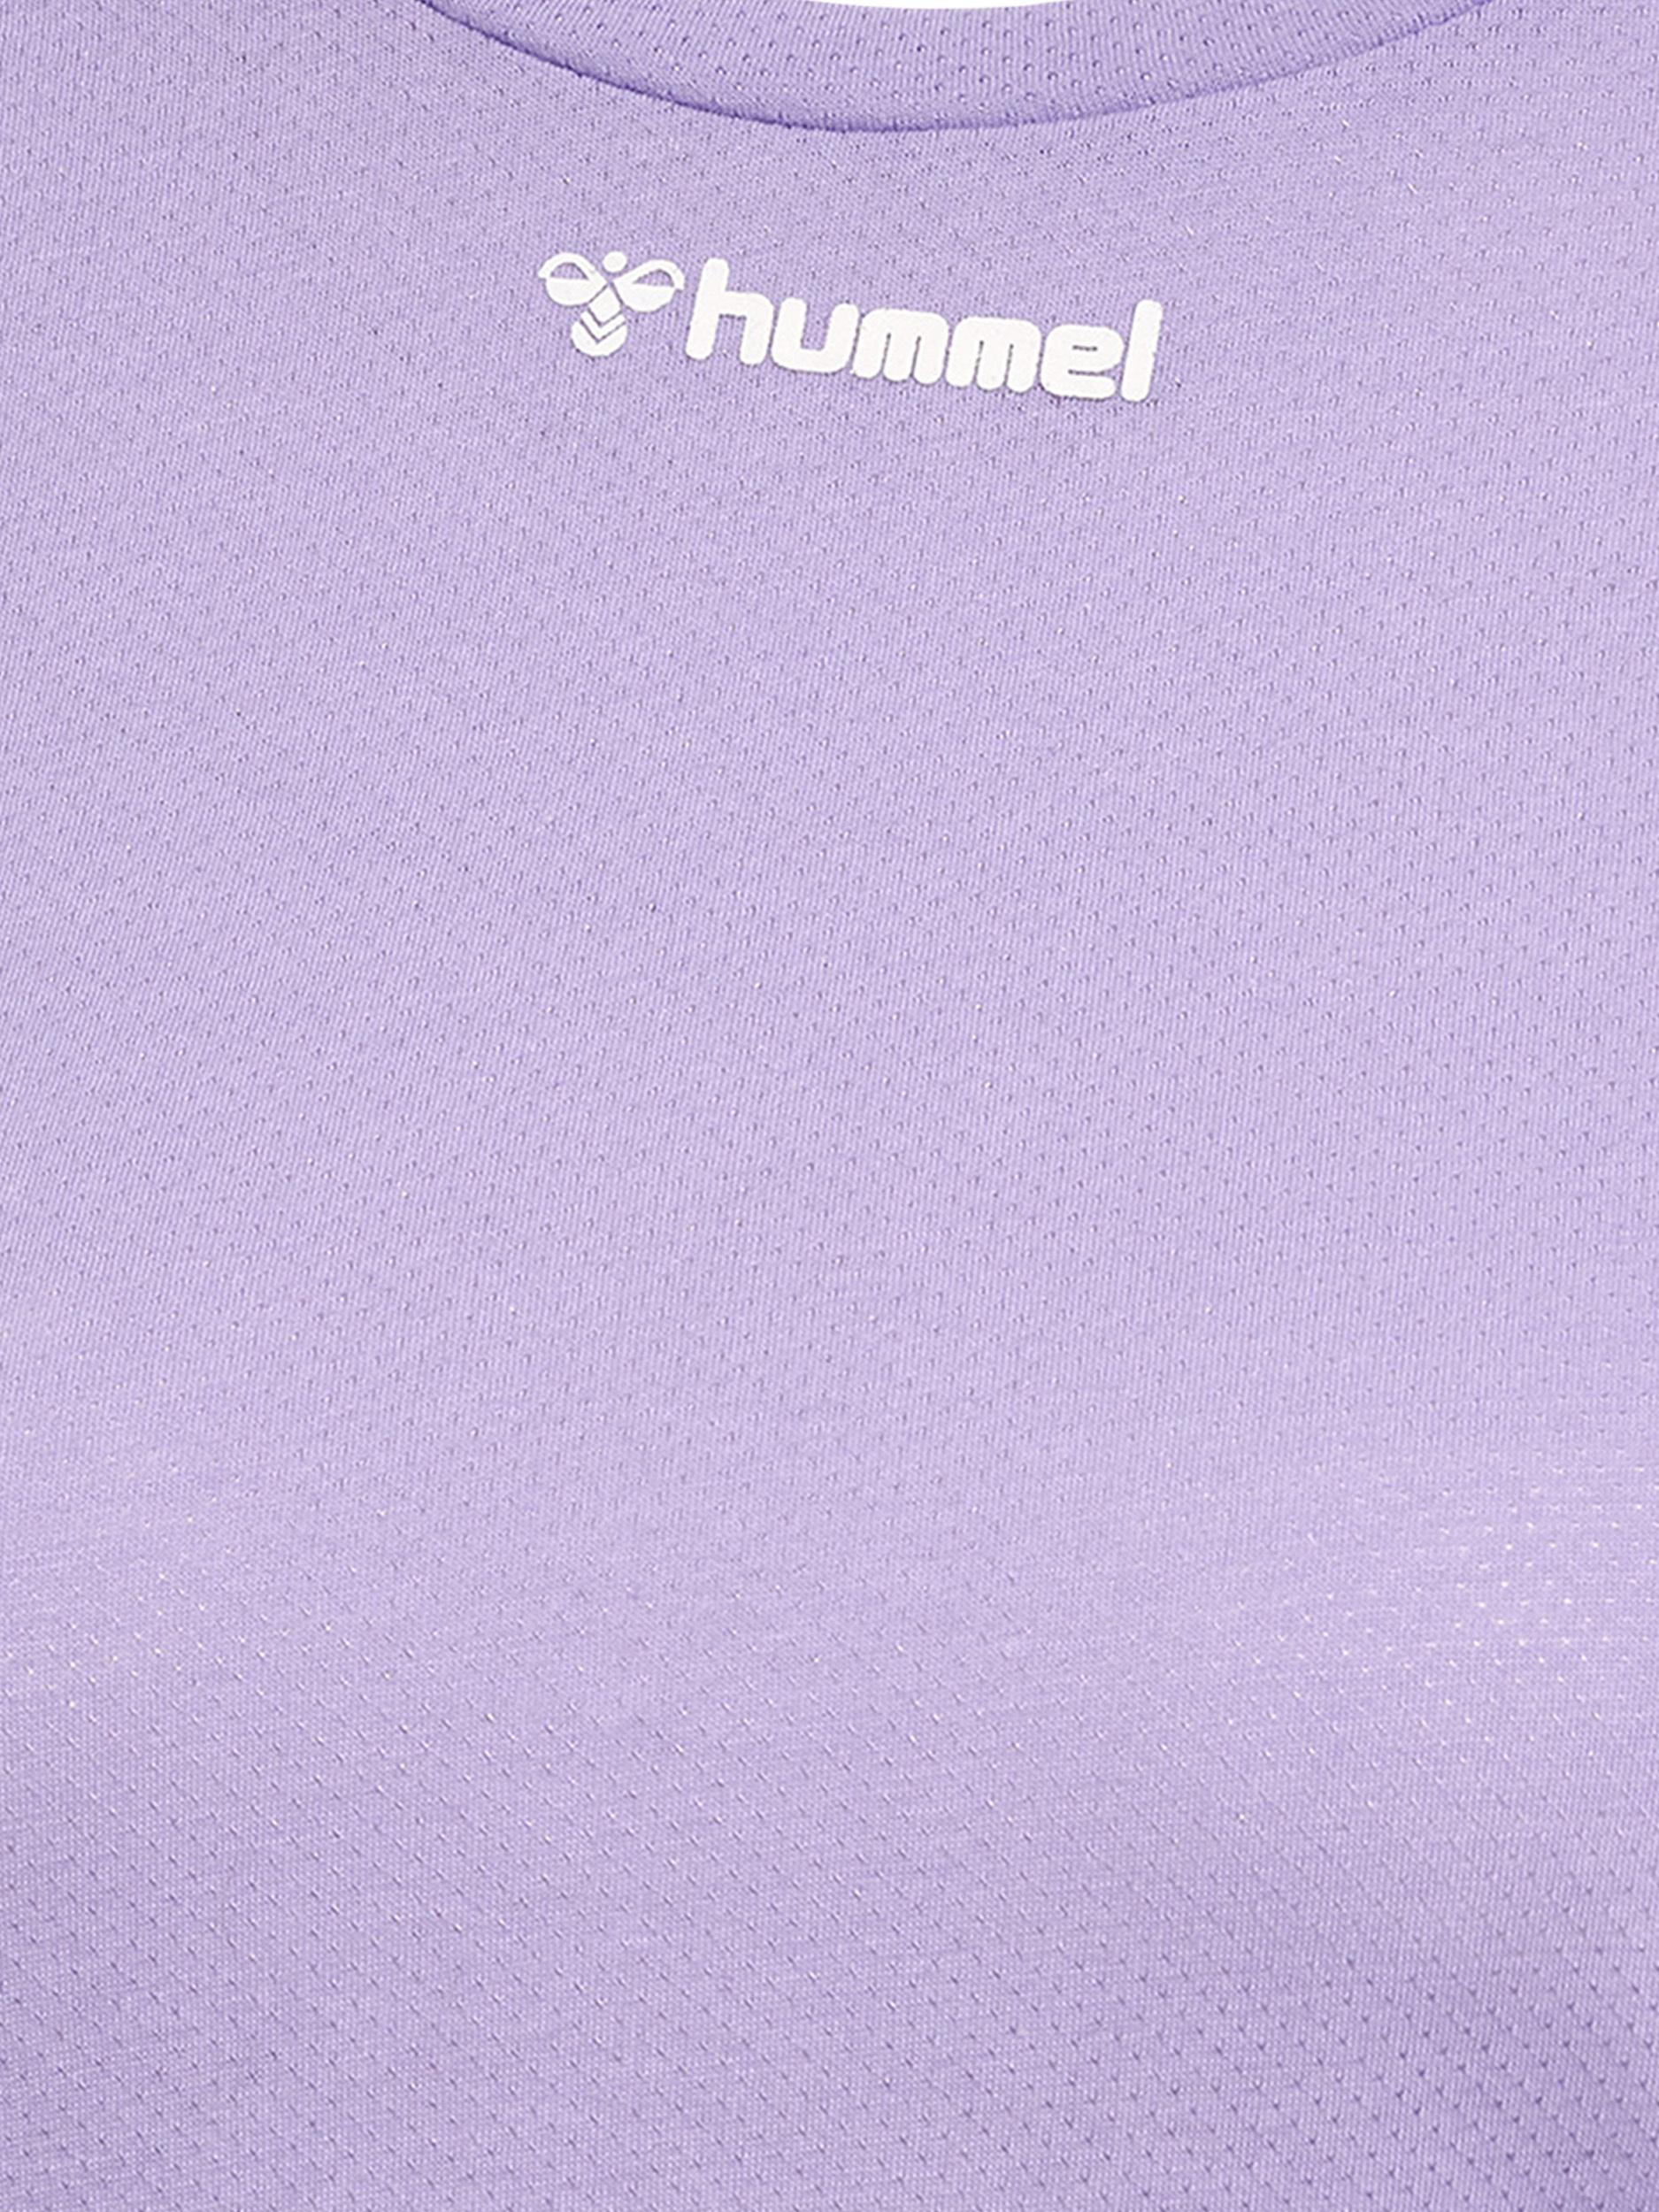 Shop im VANJA hmlMT Damen T-Shirt L/S LAVENDER Hummel von kaufen T-SHIRT Online SportScheck